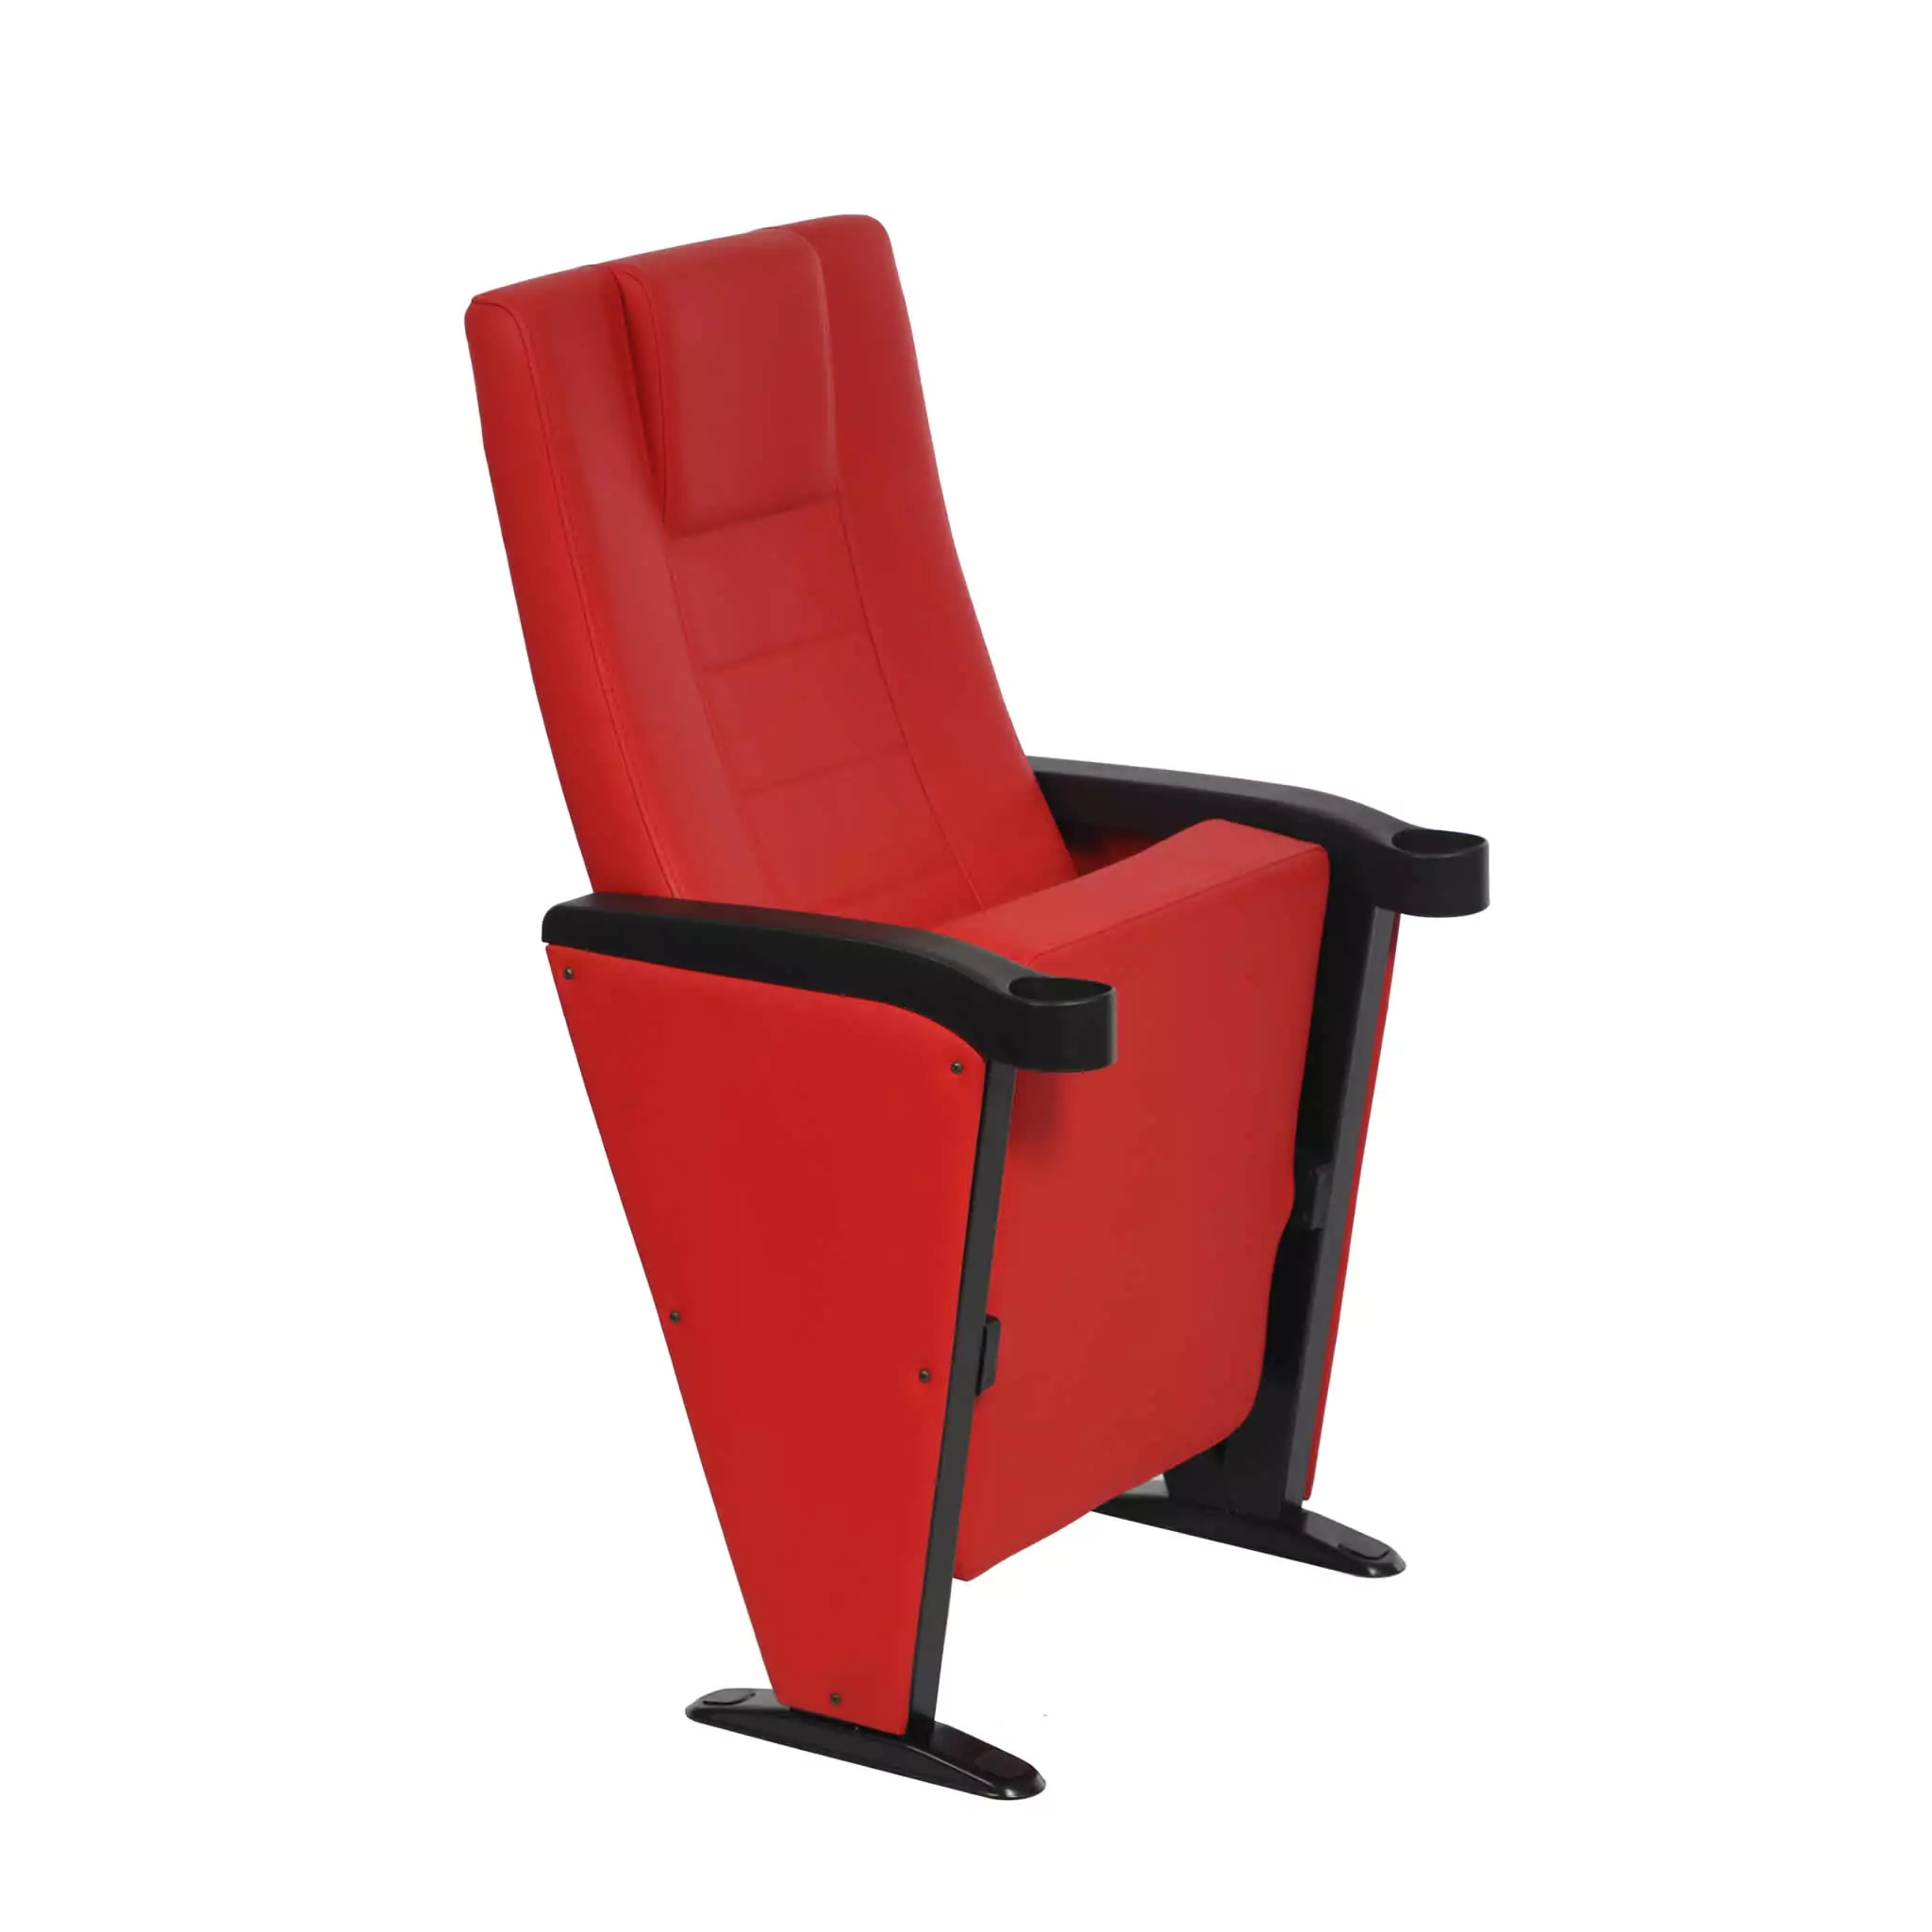 Simko Seating Product Stadium Seat Safir V Premium